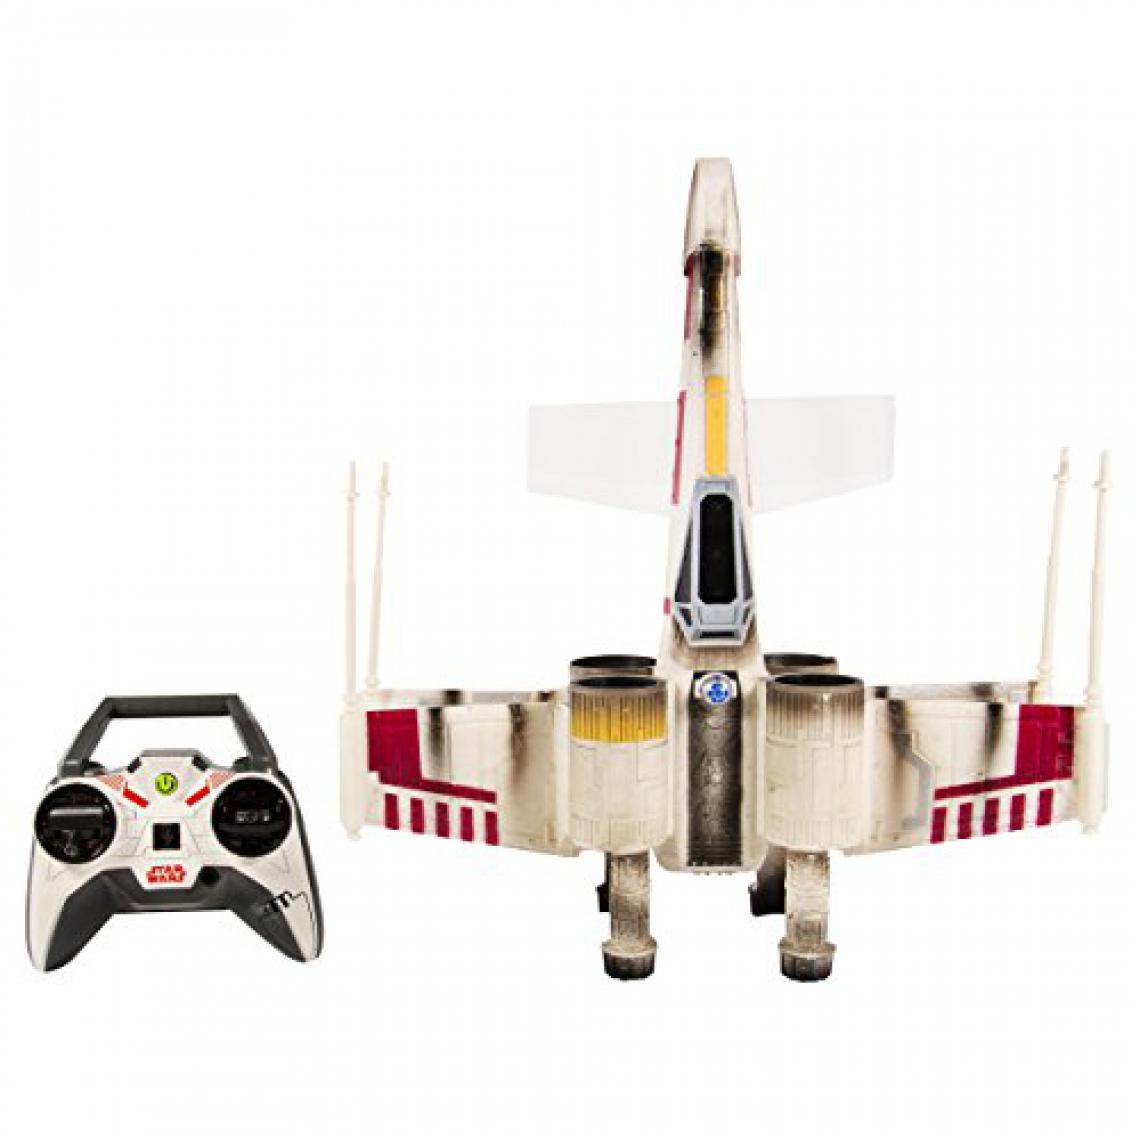 Air Hogs - Télécommande Air Hogs Star Wars X-Wing Starfighter - Jouet électronique enfant